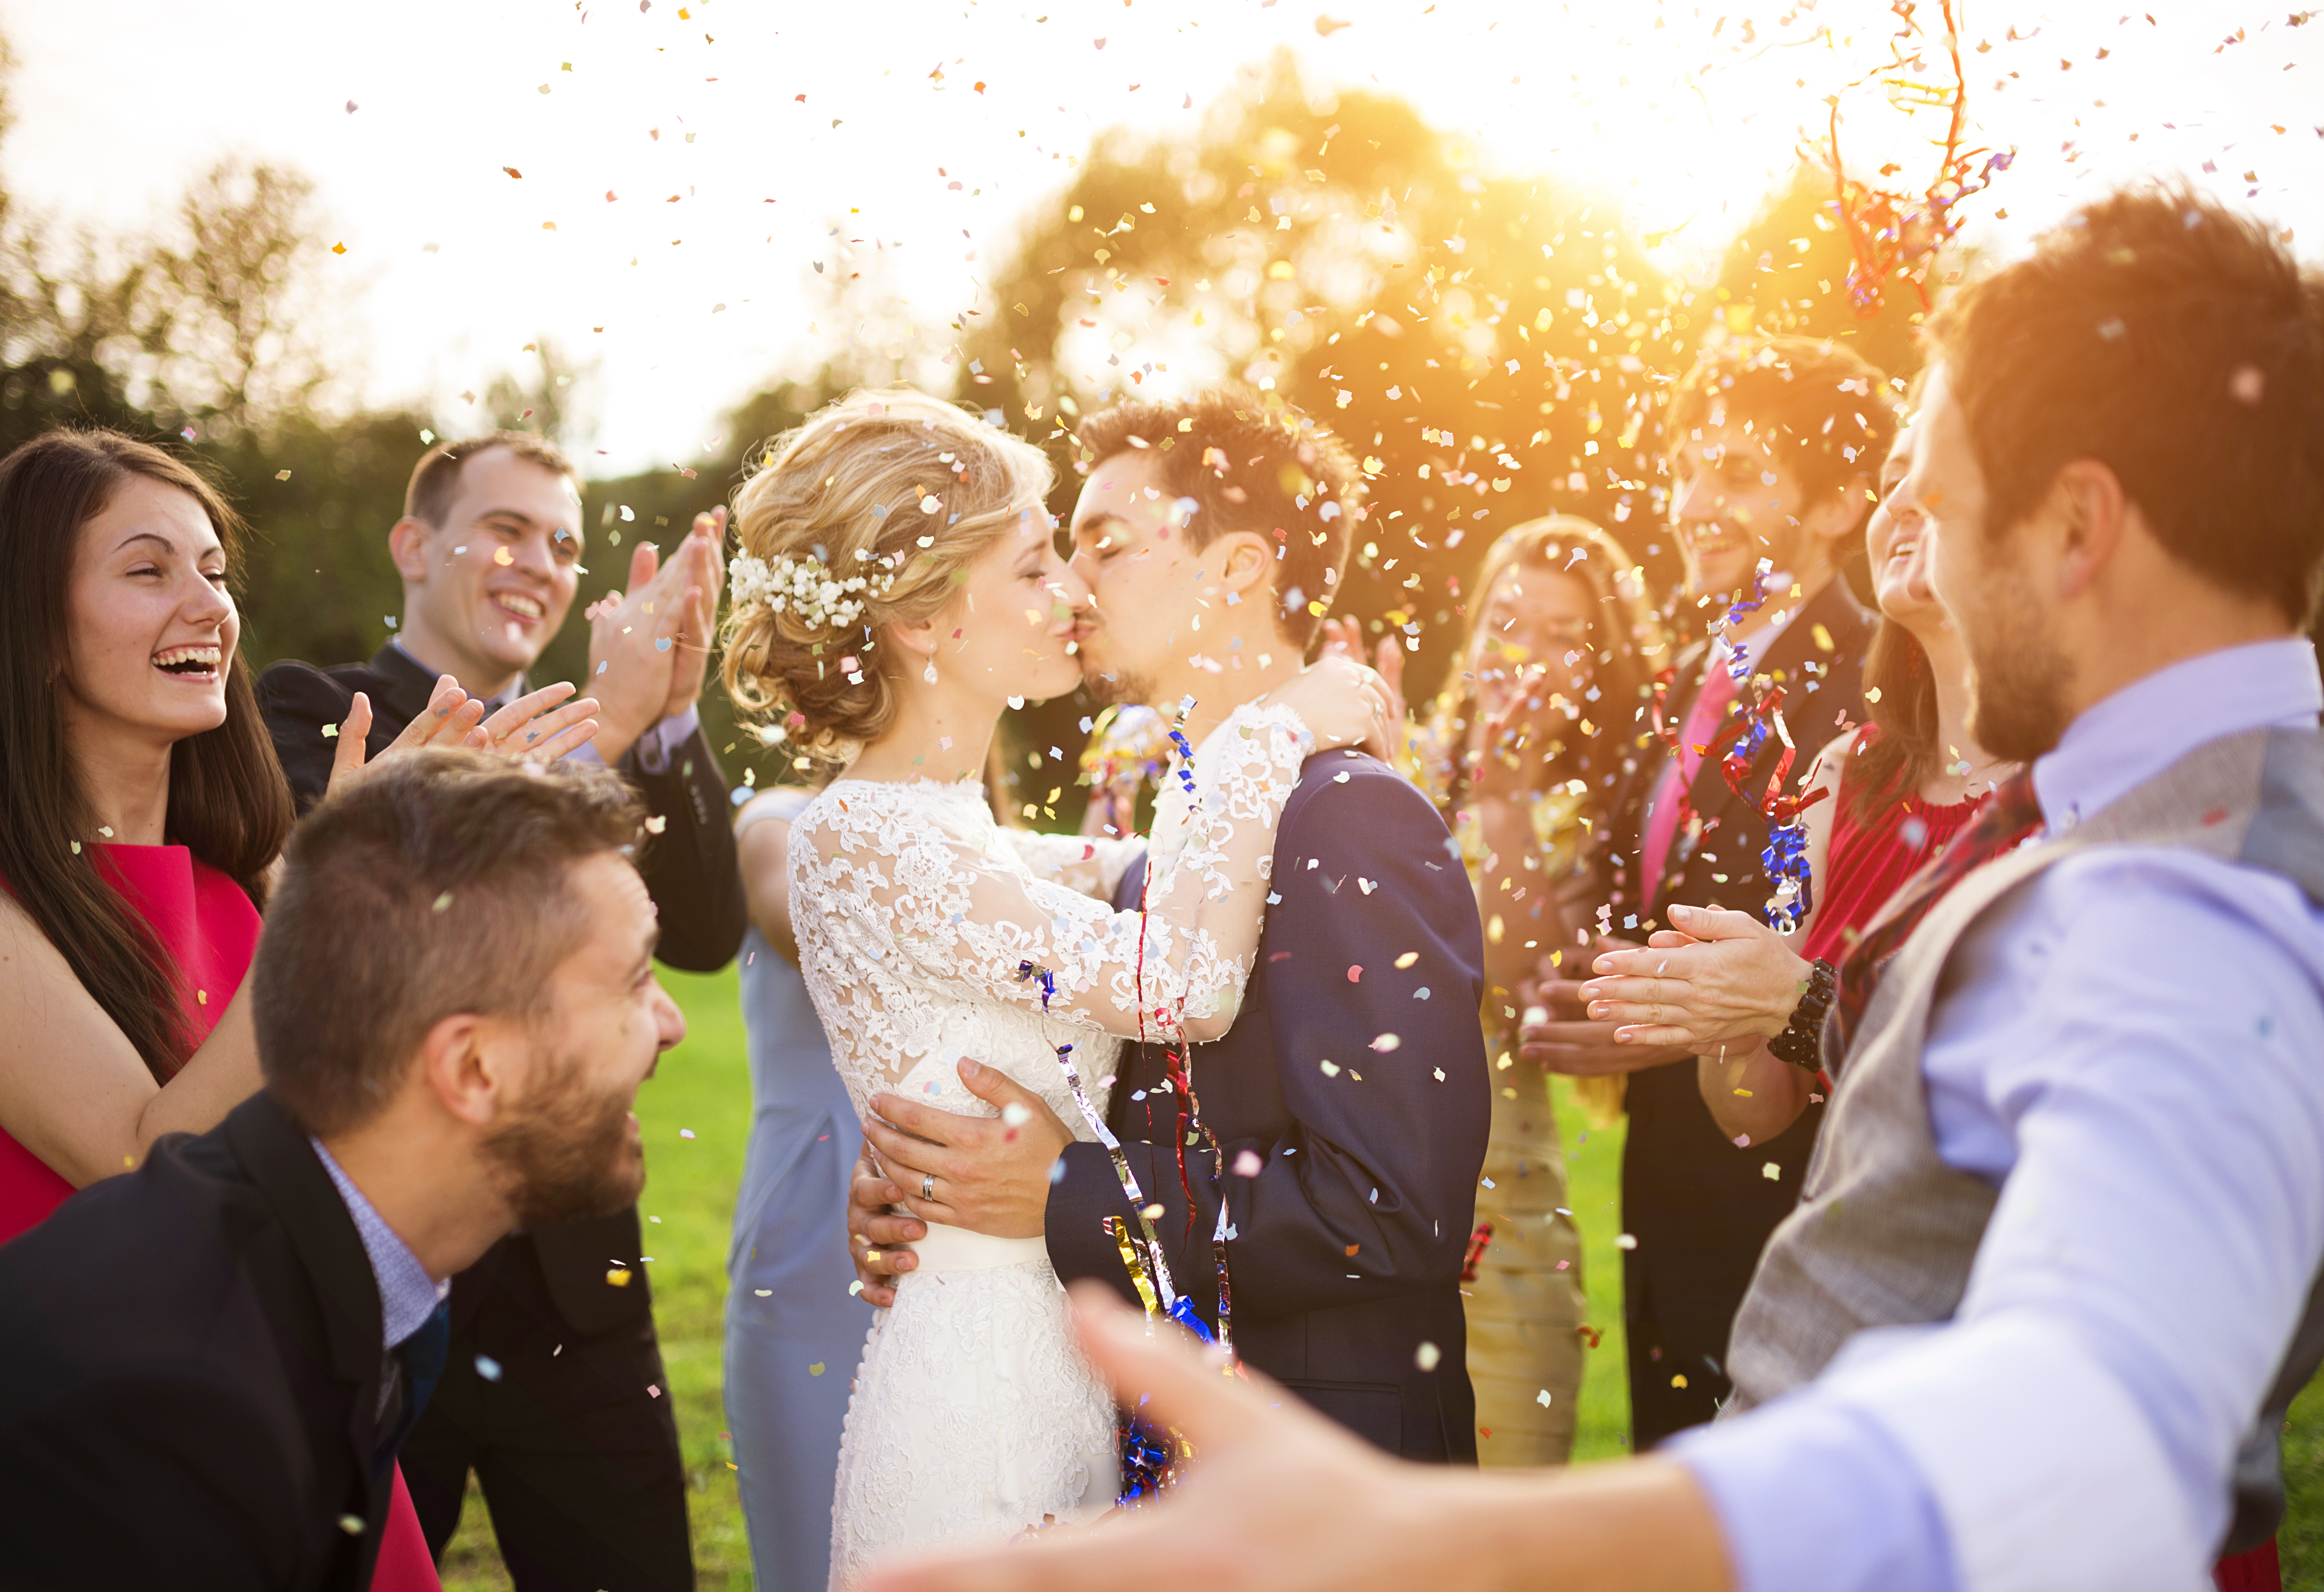 Un couple marié en train de s'embrasser | Source :  Shutterstock